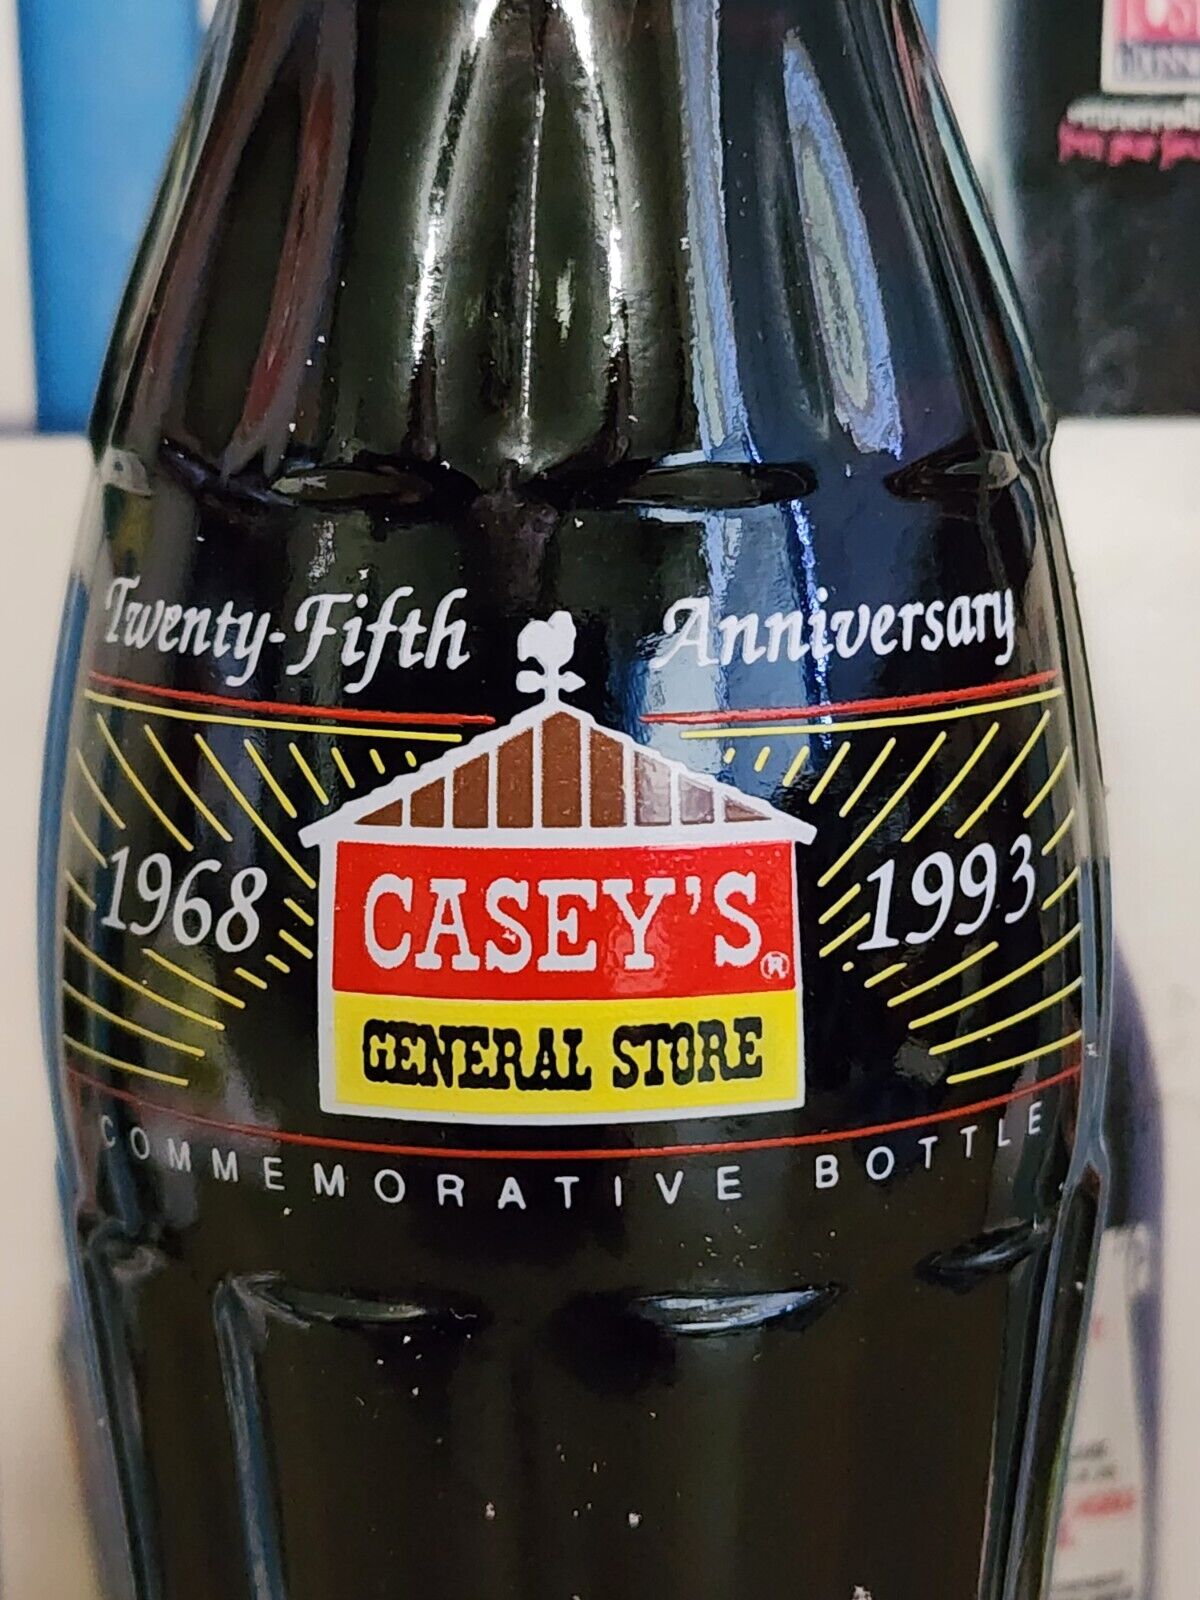 Coca-Cola 8oz commemorative bottle 1993 Caseys General Stores 25th Anniversary